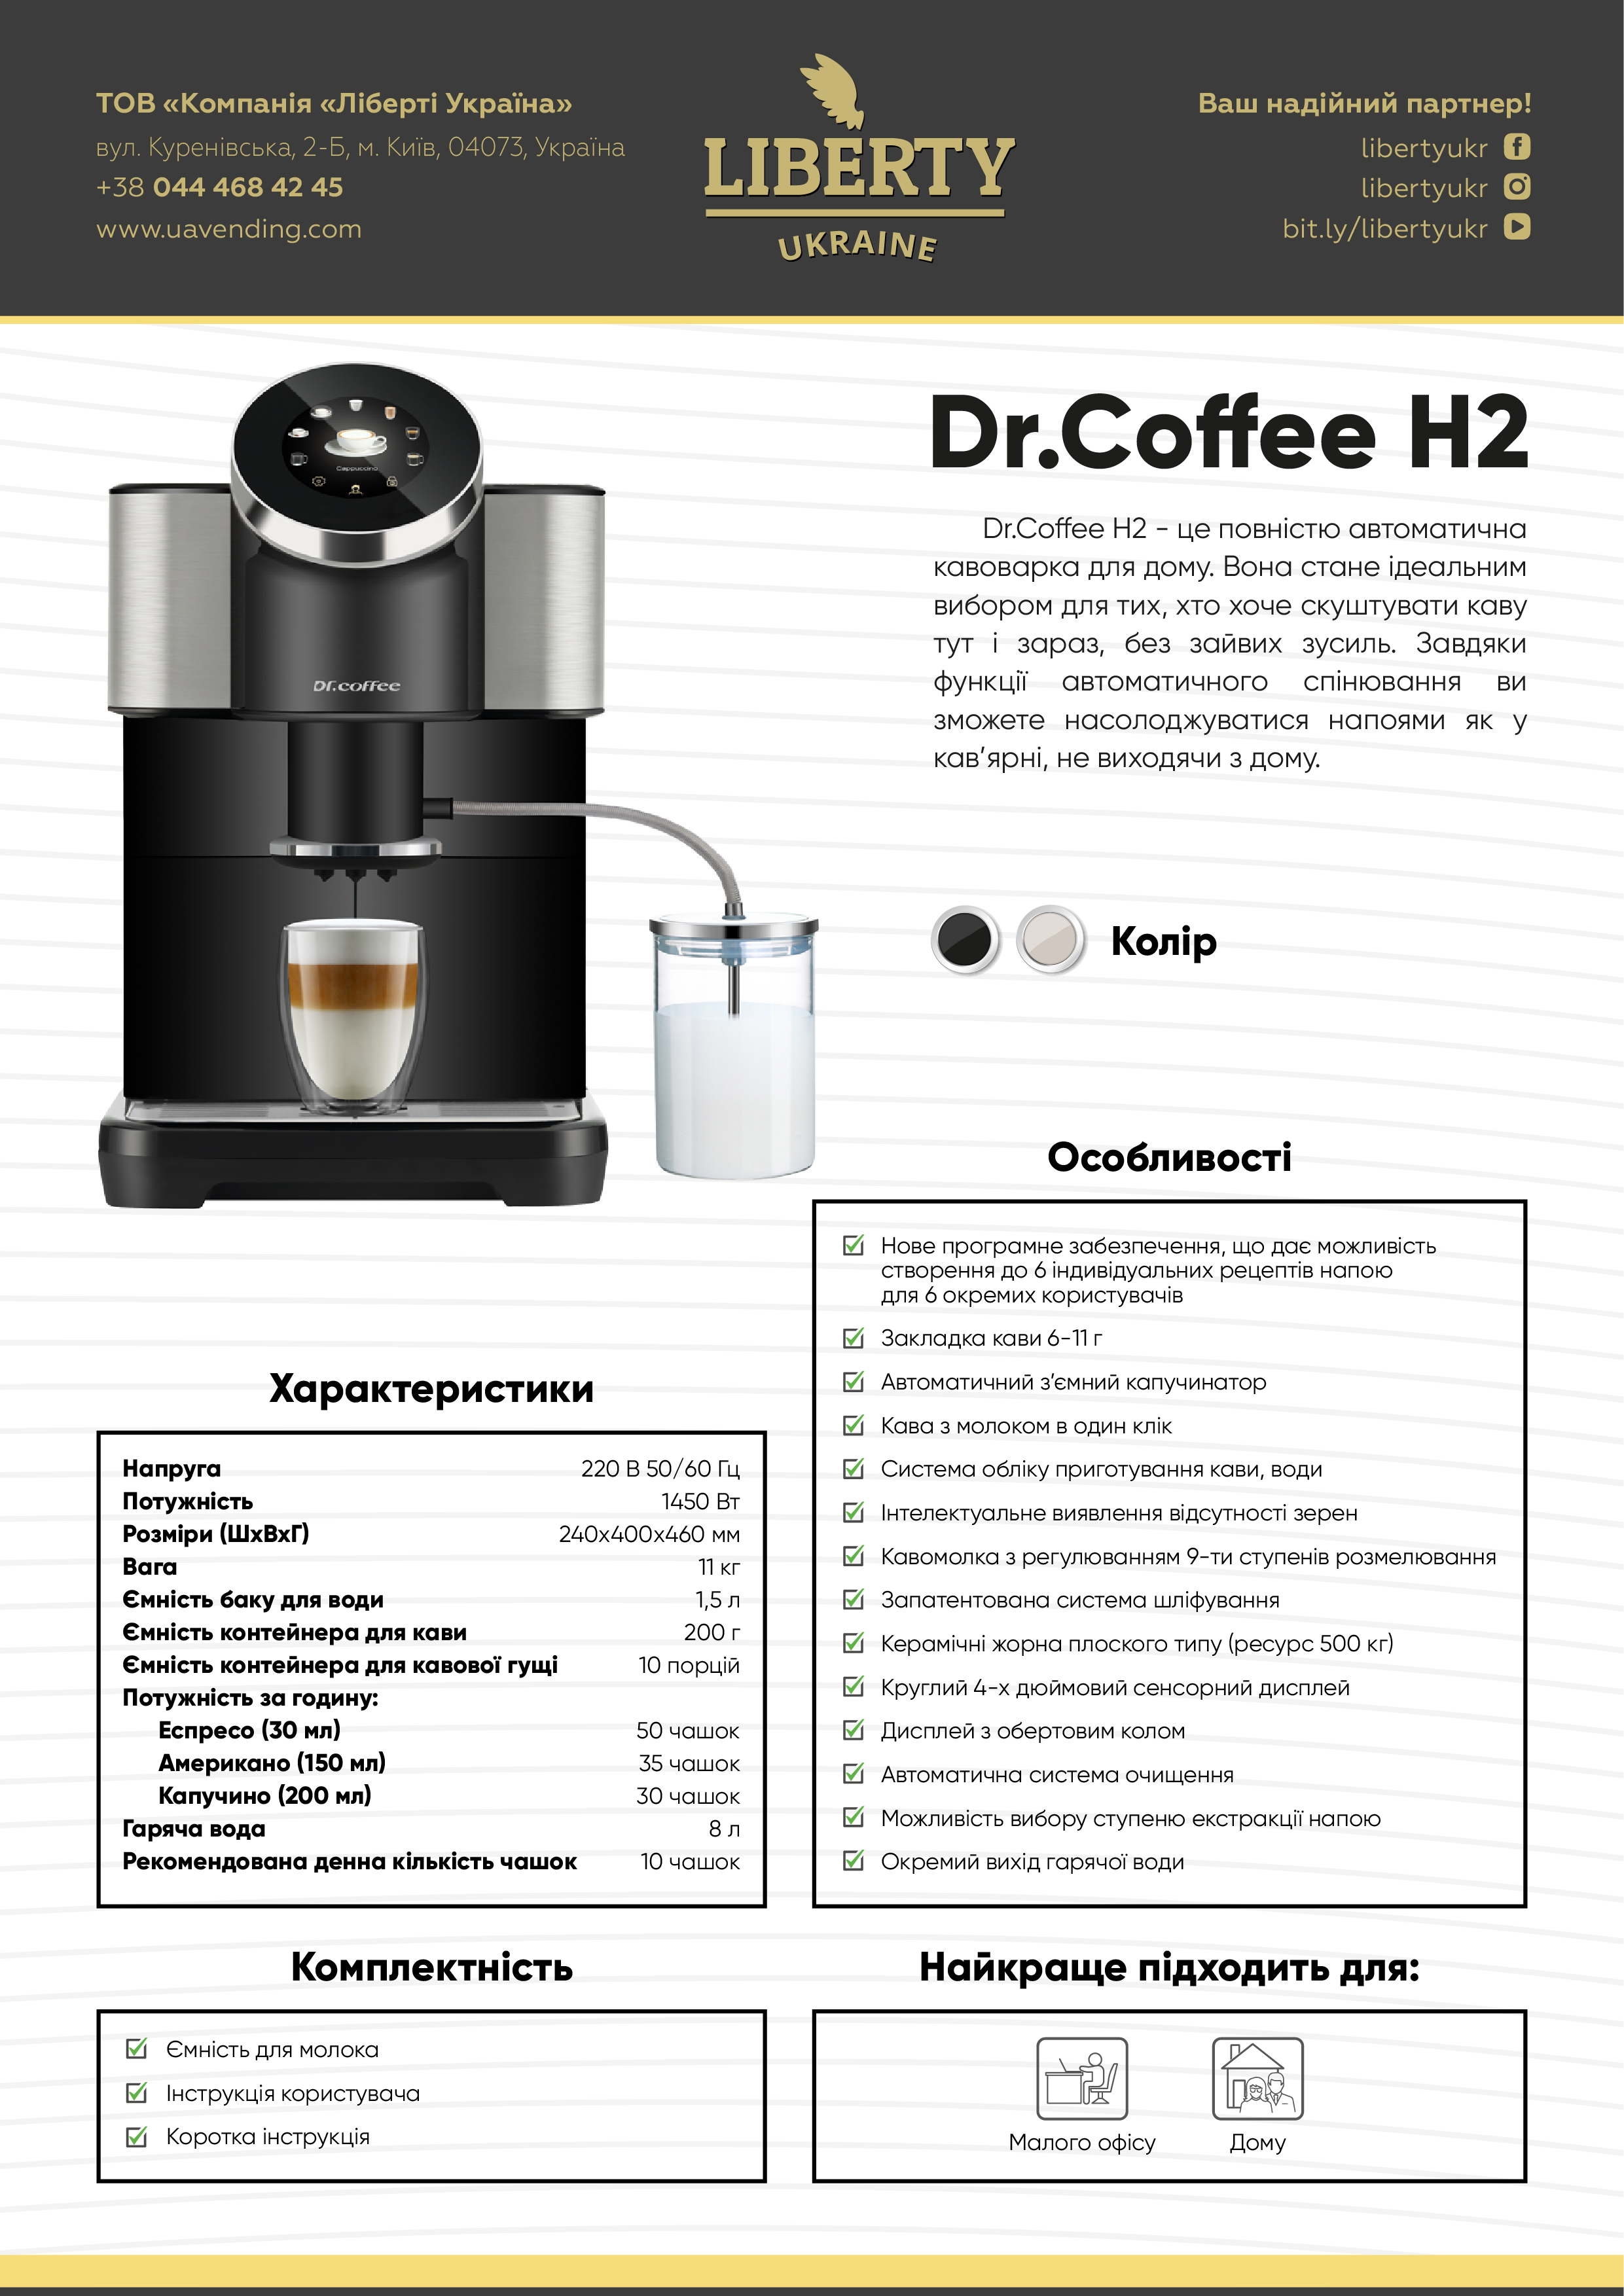 Dr. Café_H2